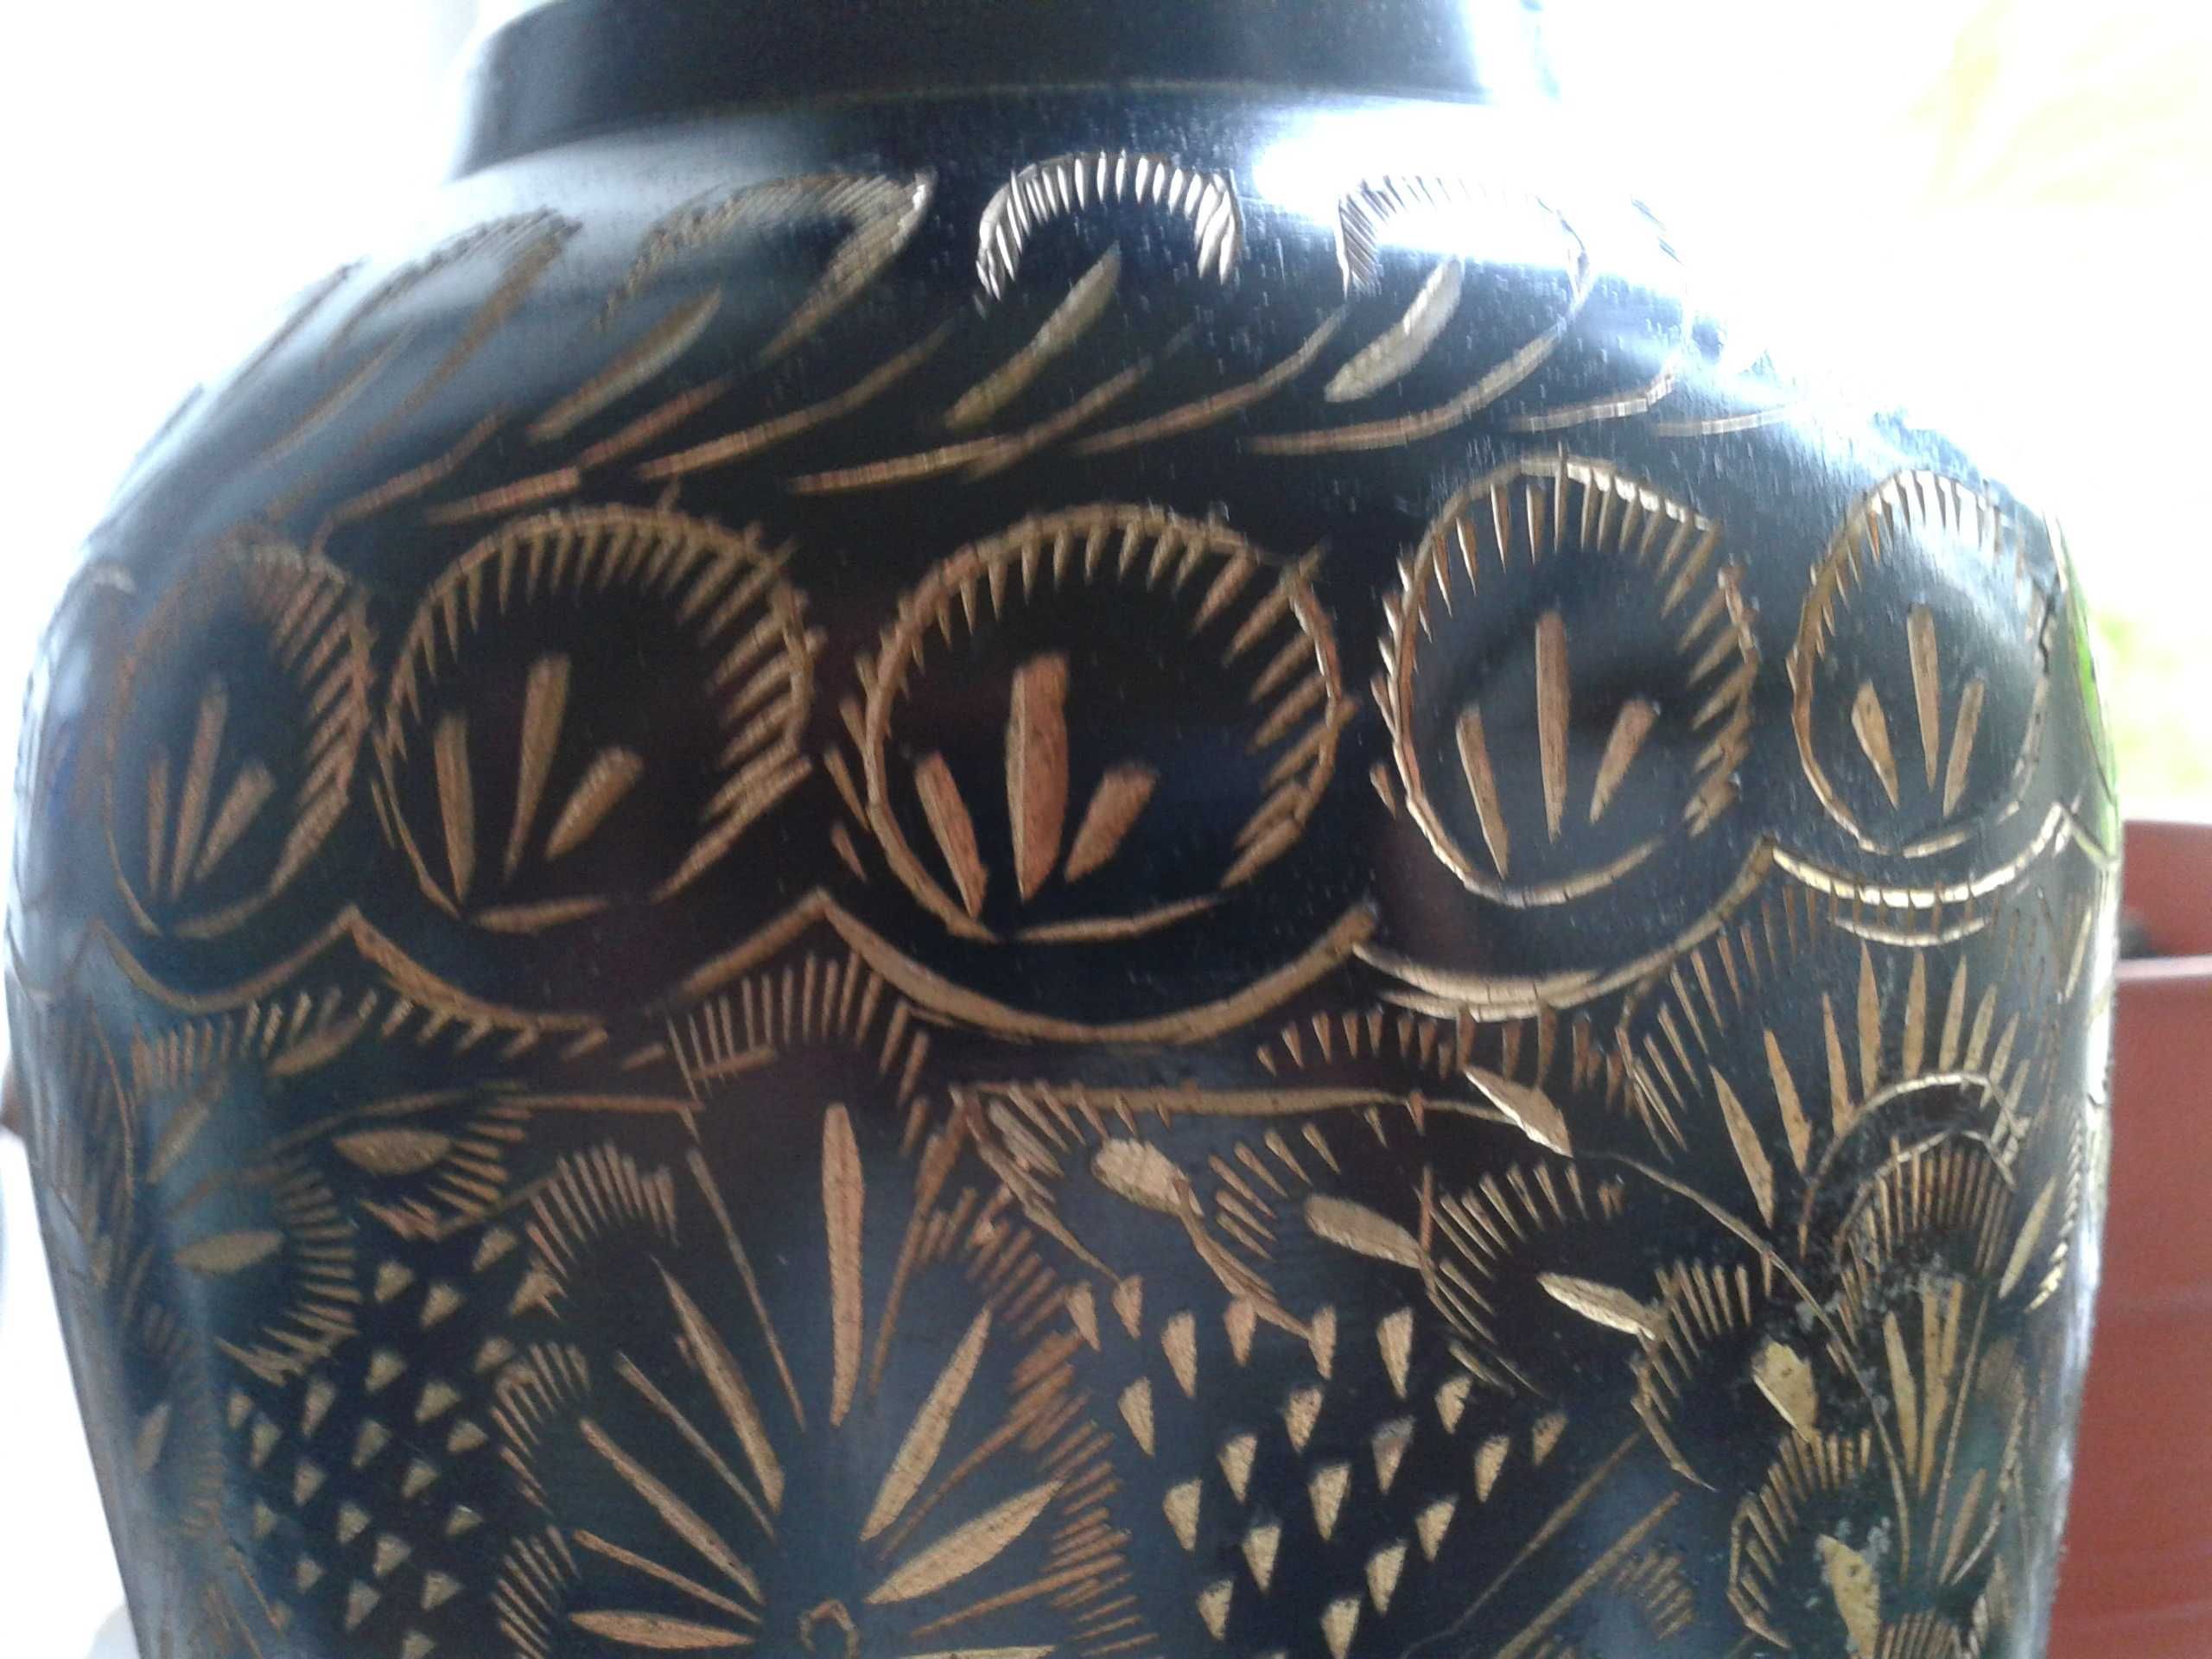 ндийскую латунную вазу( есть дефект)